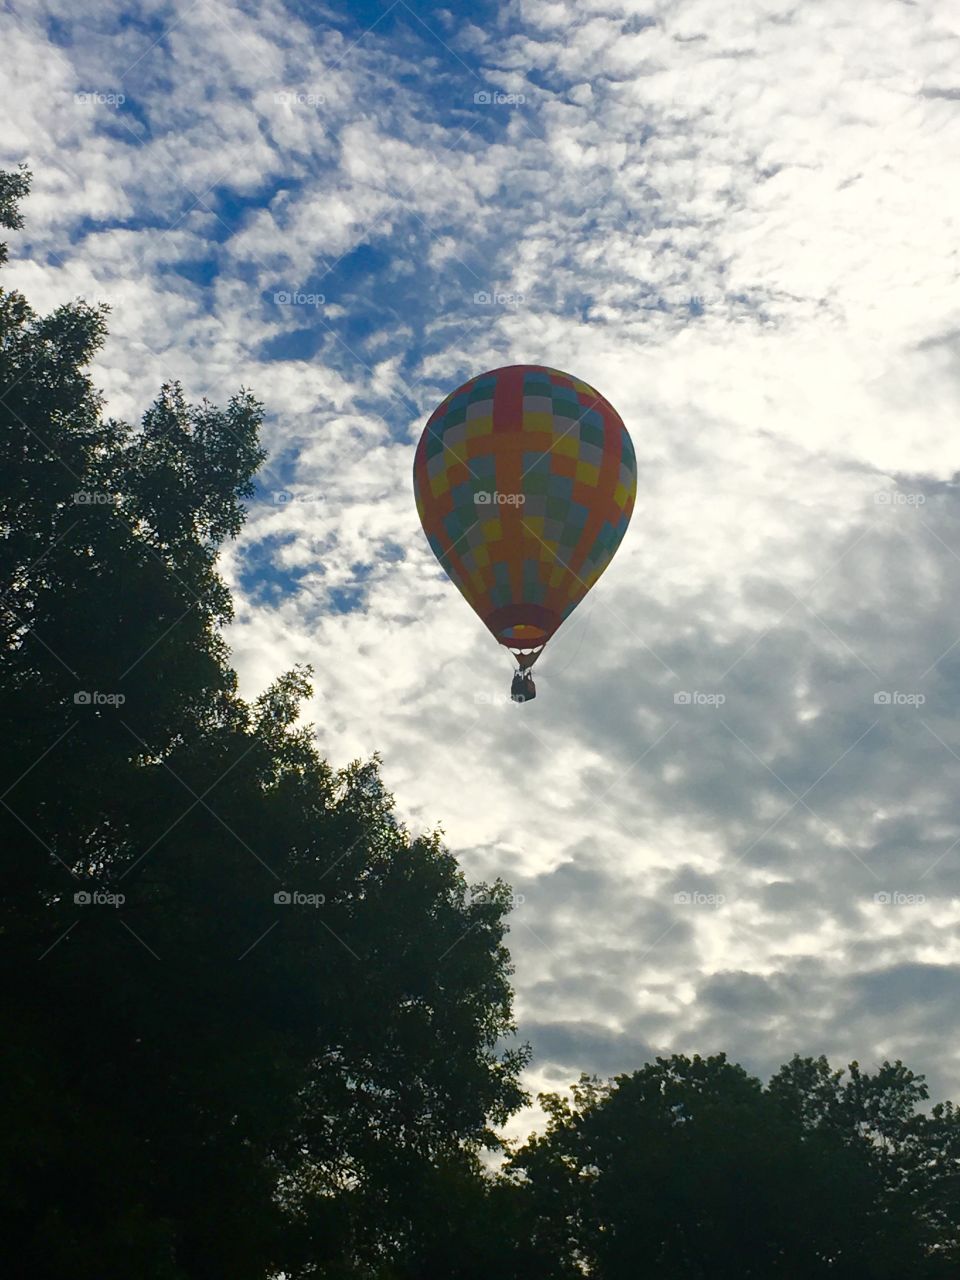 Morning balloon ride